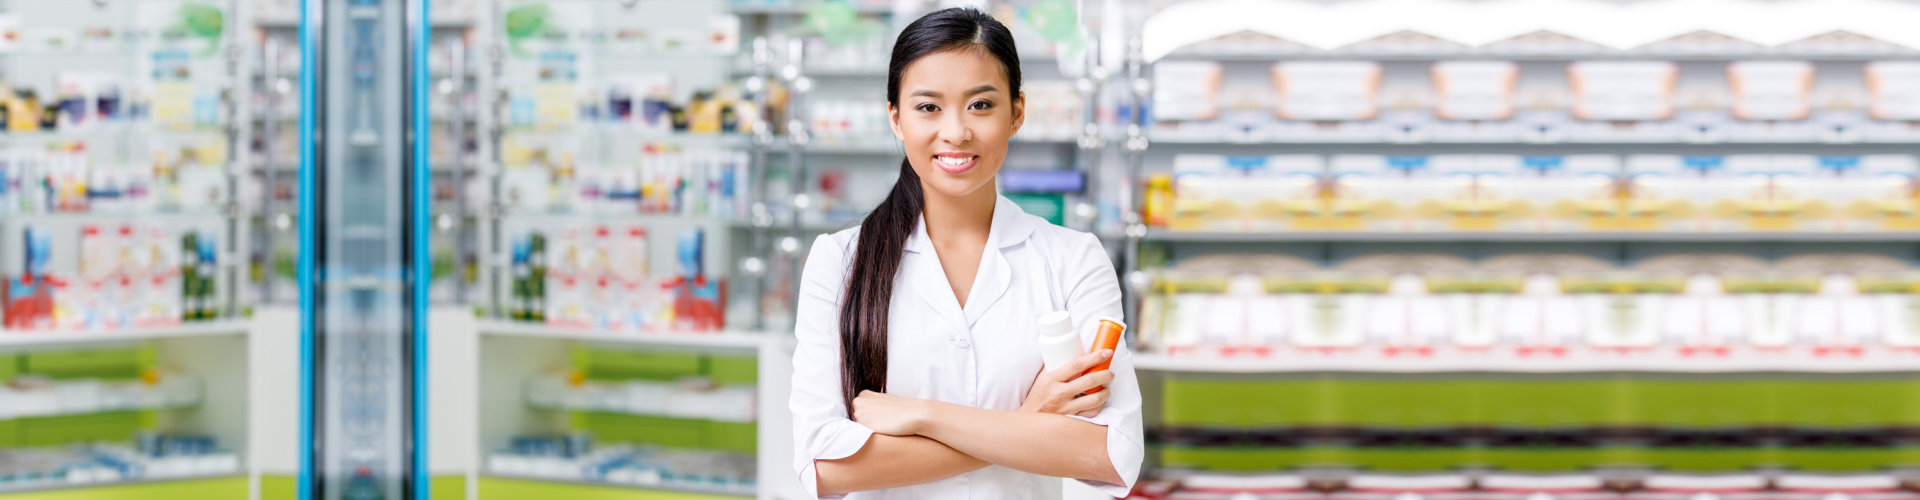 Female Pharmacist smiling